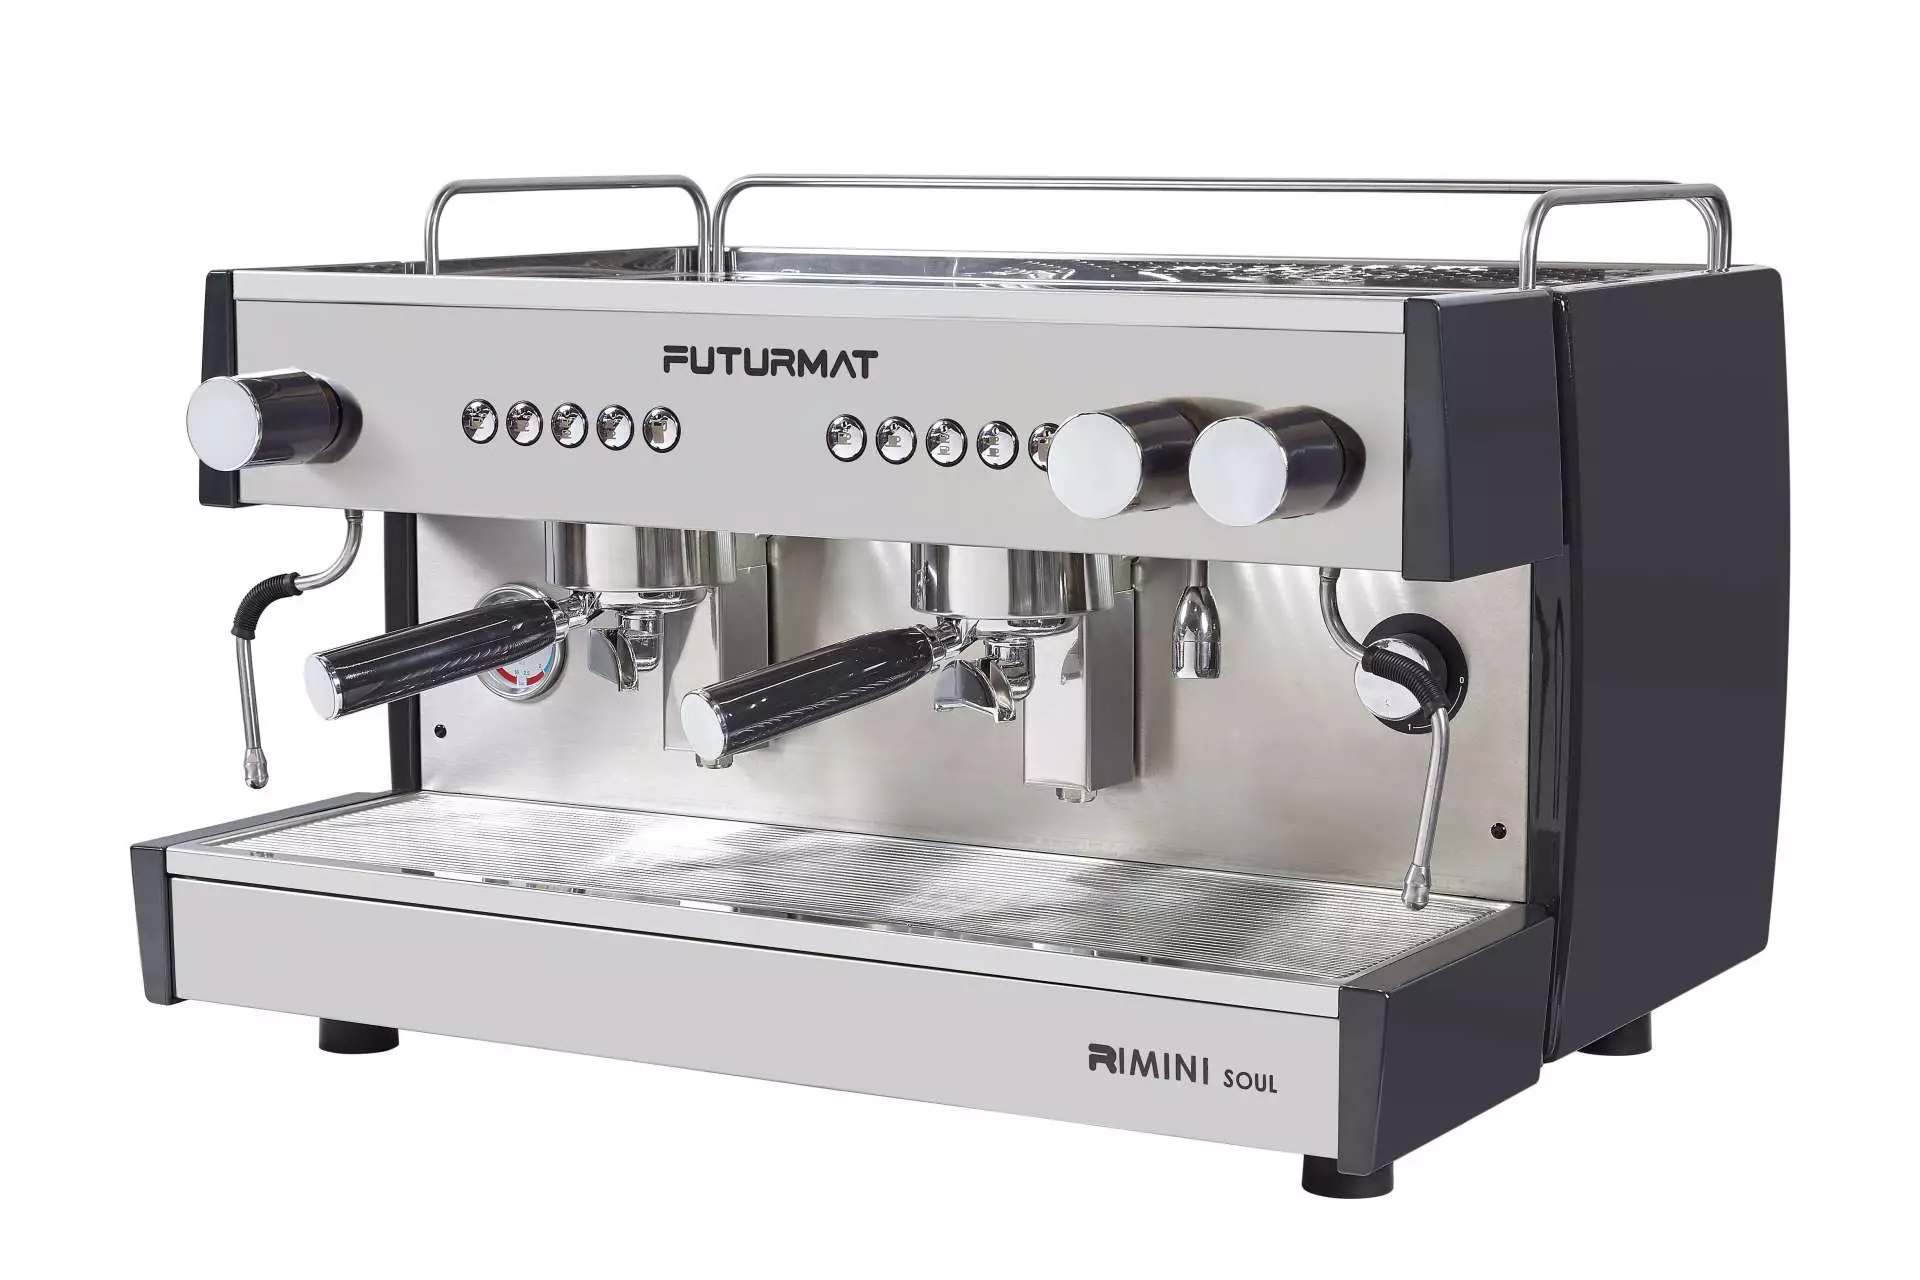 Más que un sueño: así es La Dea, la nueva máquina de café espresso -  HostelVending